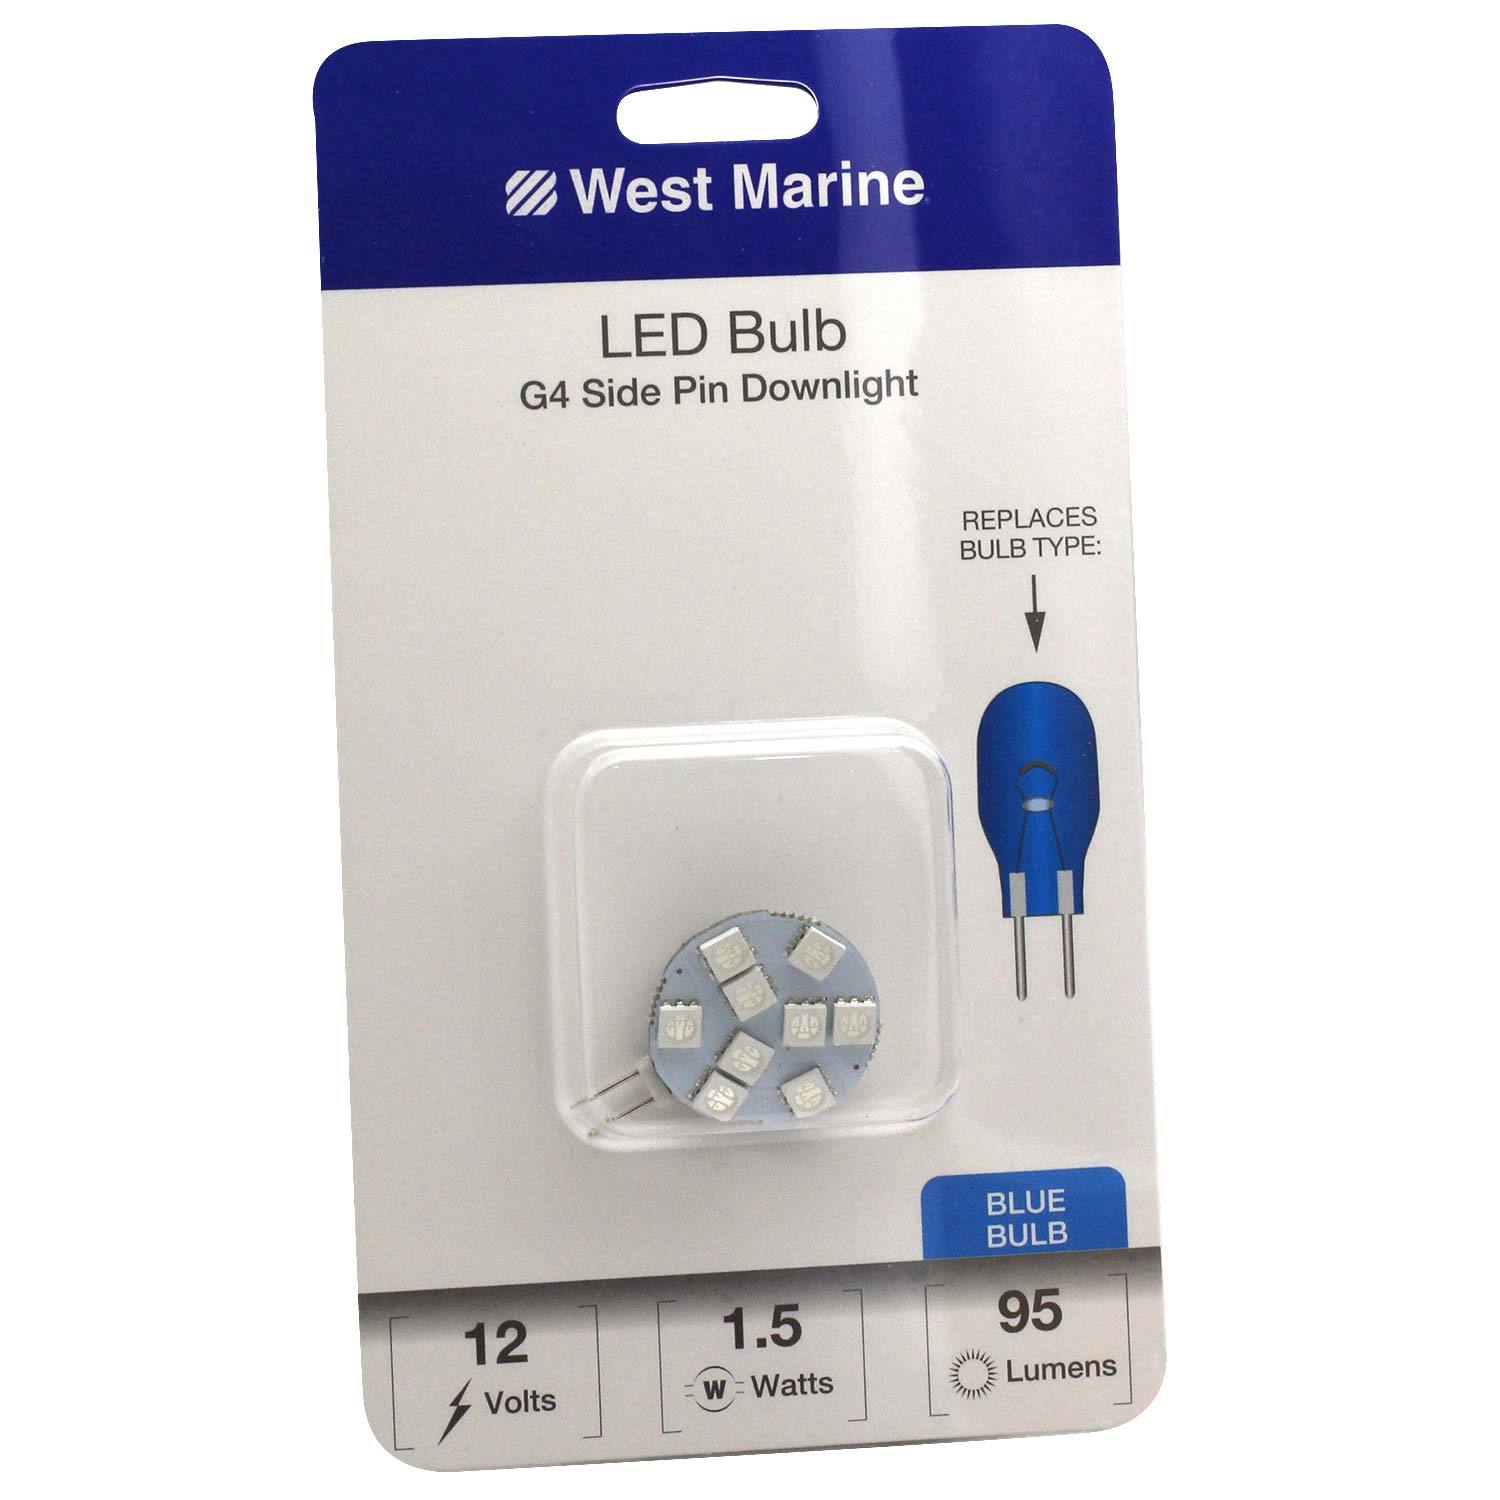 stil håndvask Bliv oppe G4 Side Pin Downlight LED Bulb, Blue | West Marine